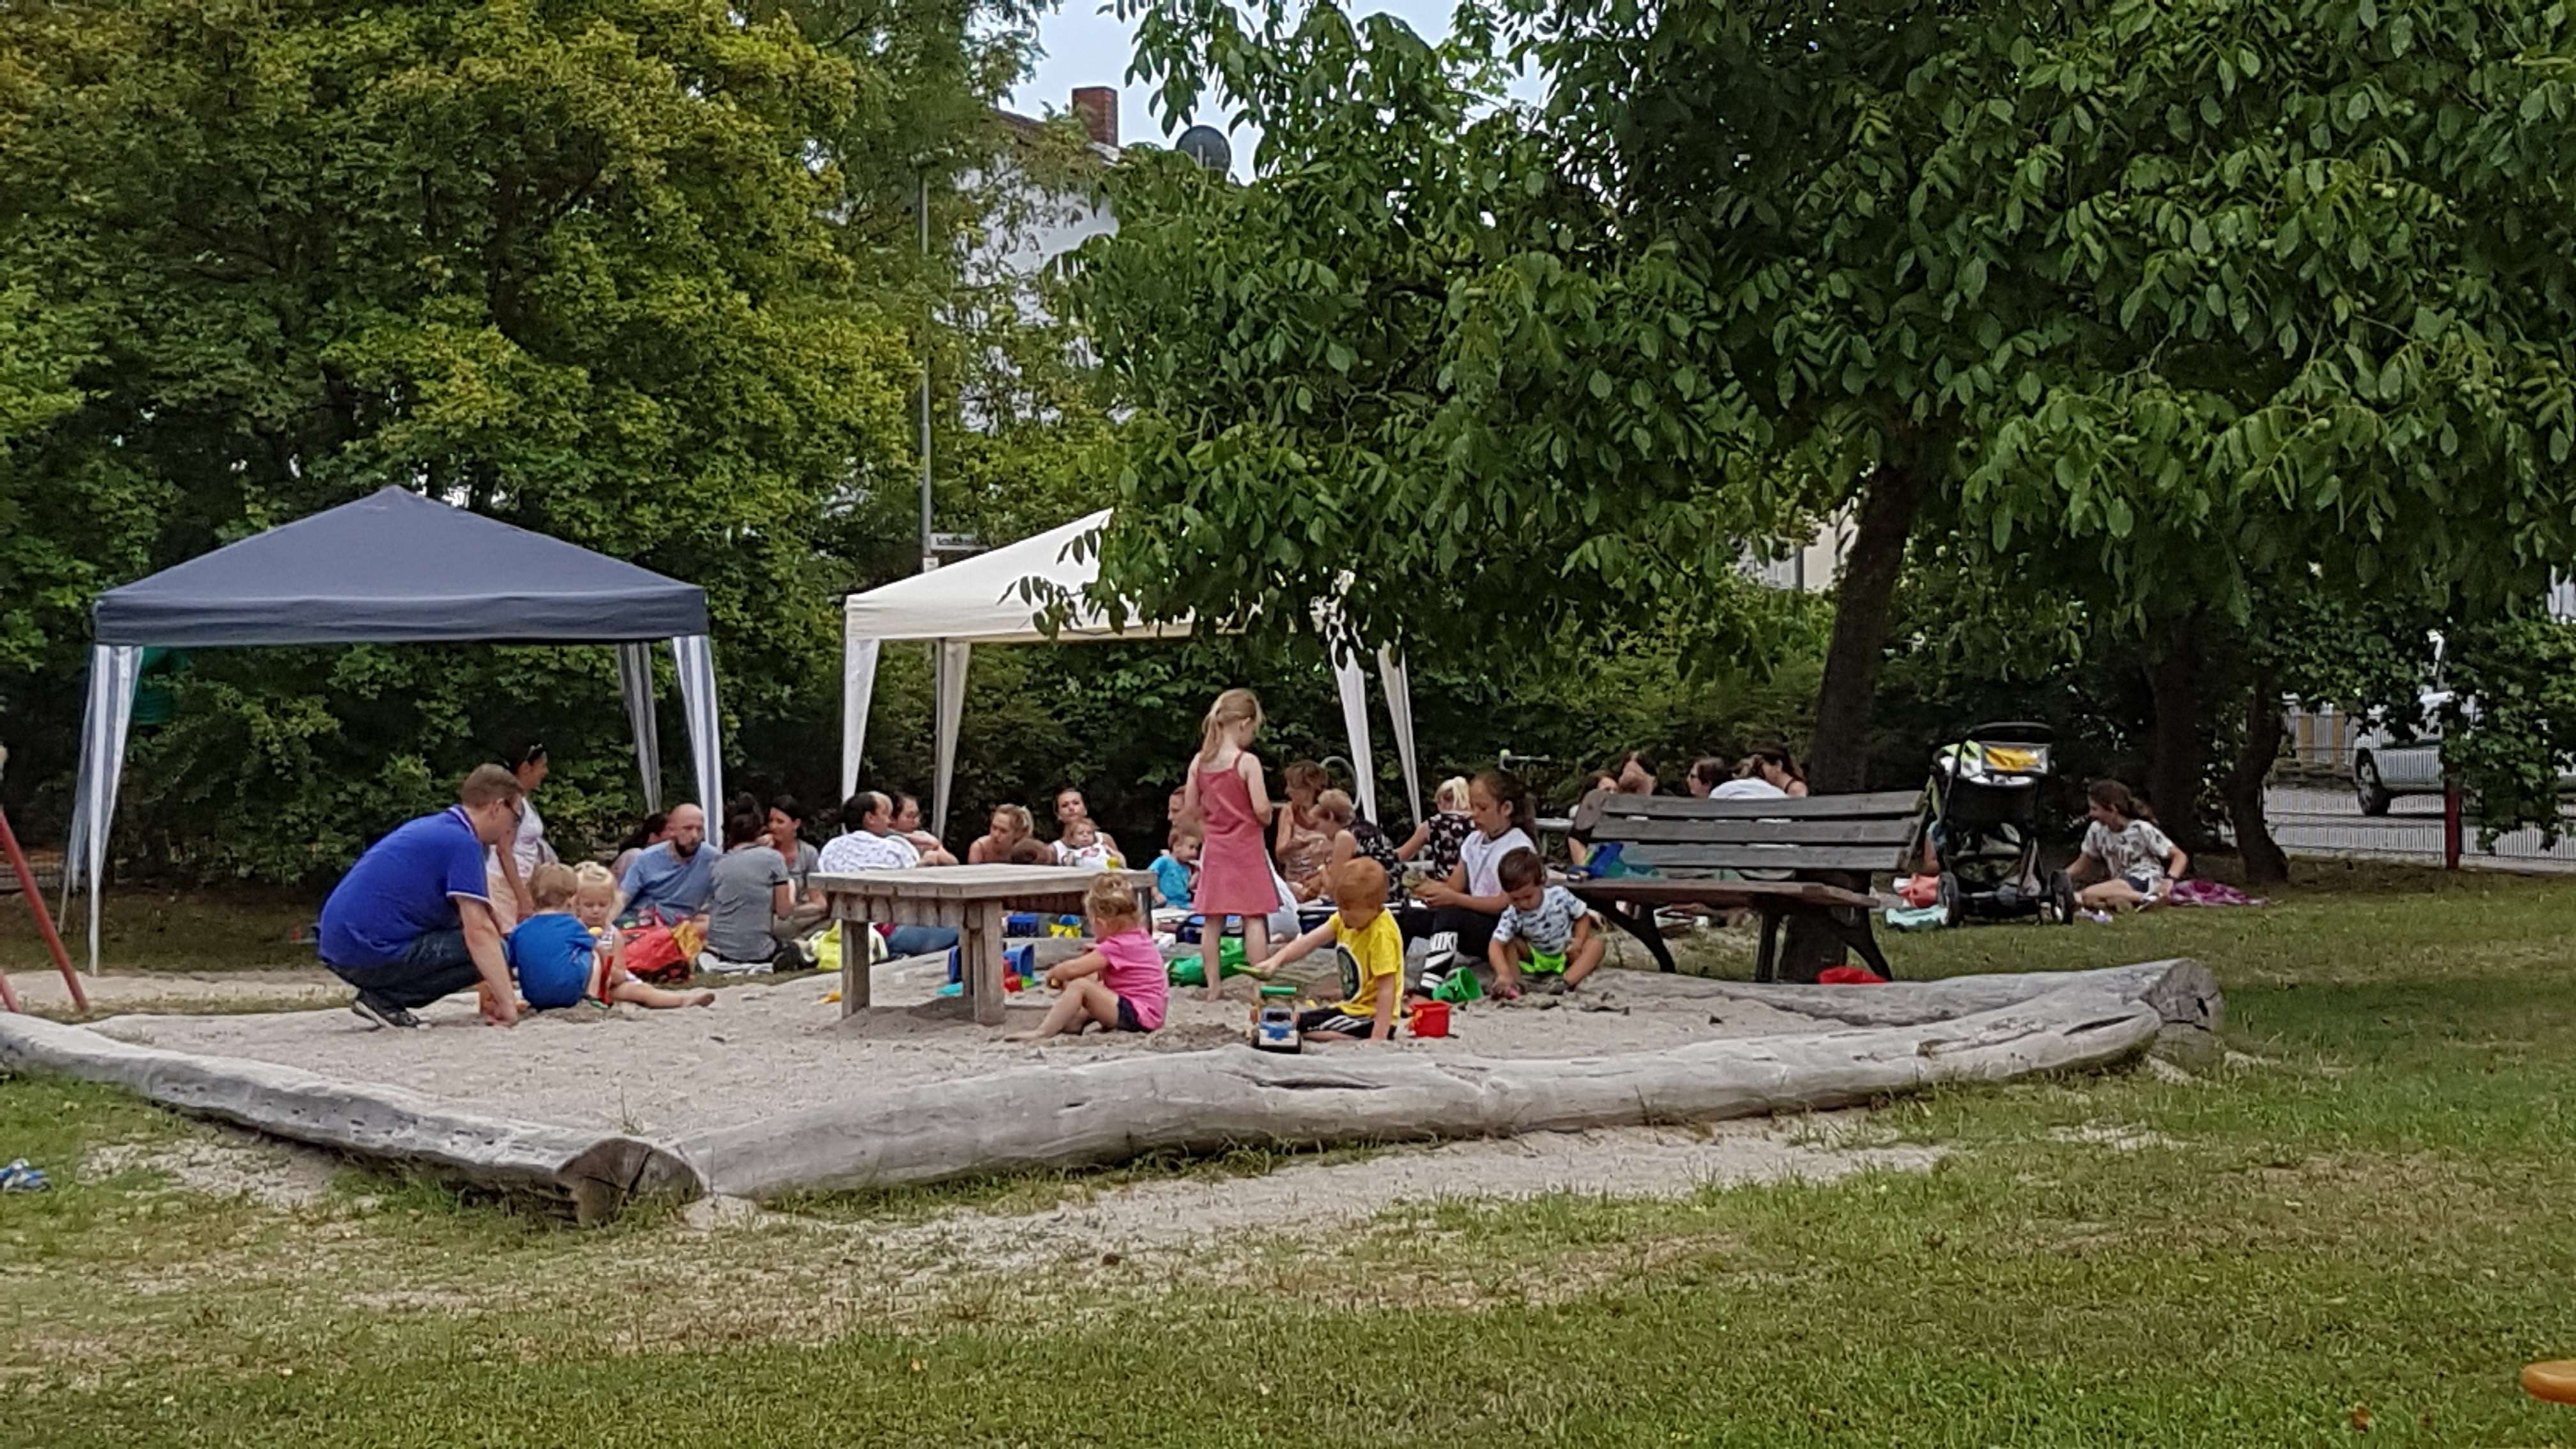  Sommerfest auf dem Spielplatz in der St. Ilgener Waldsiedlung 